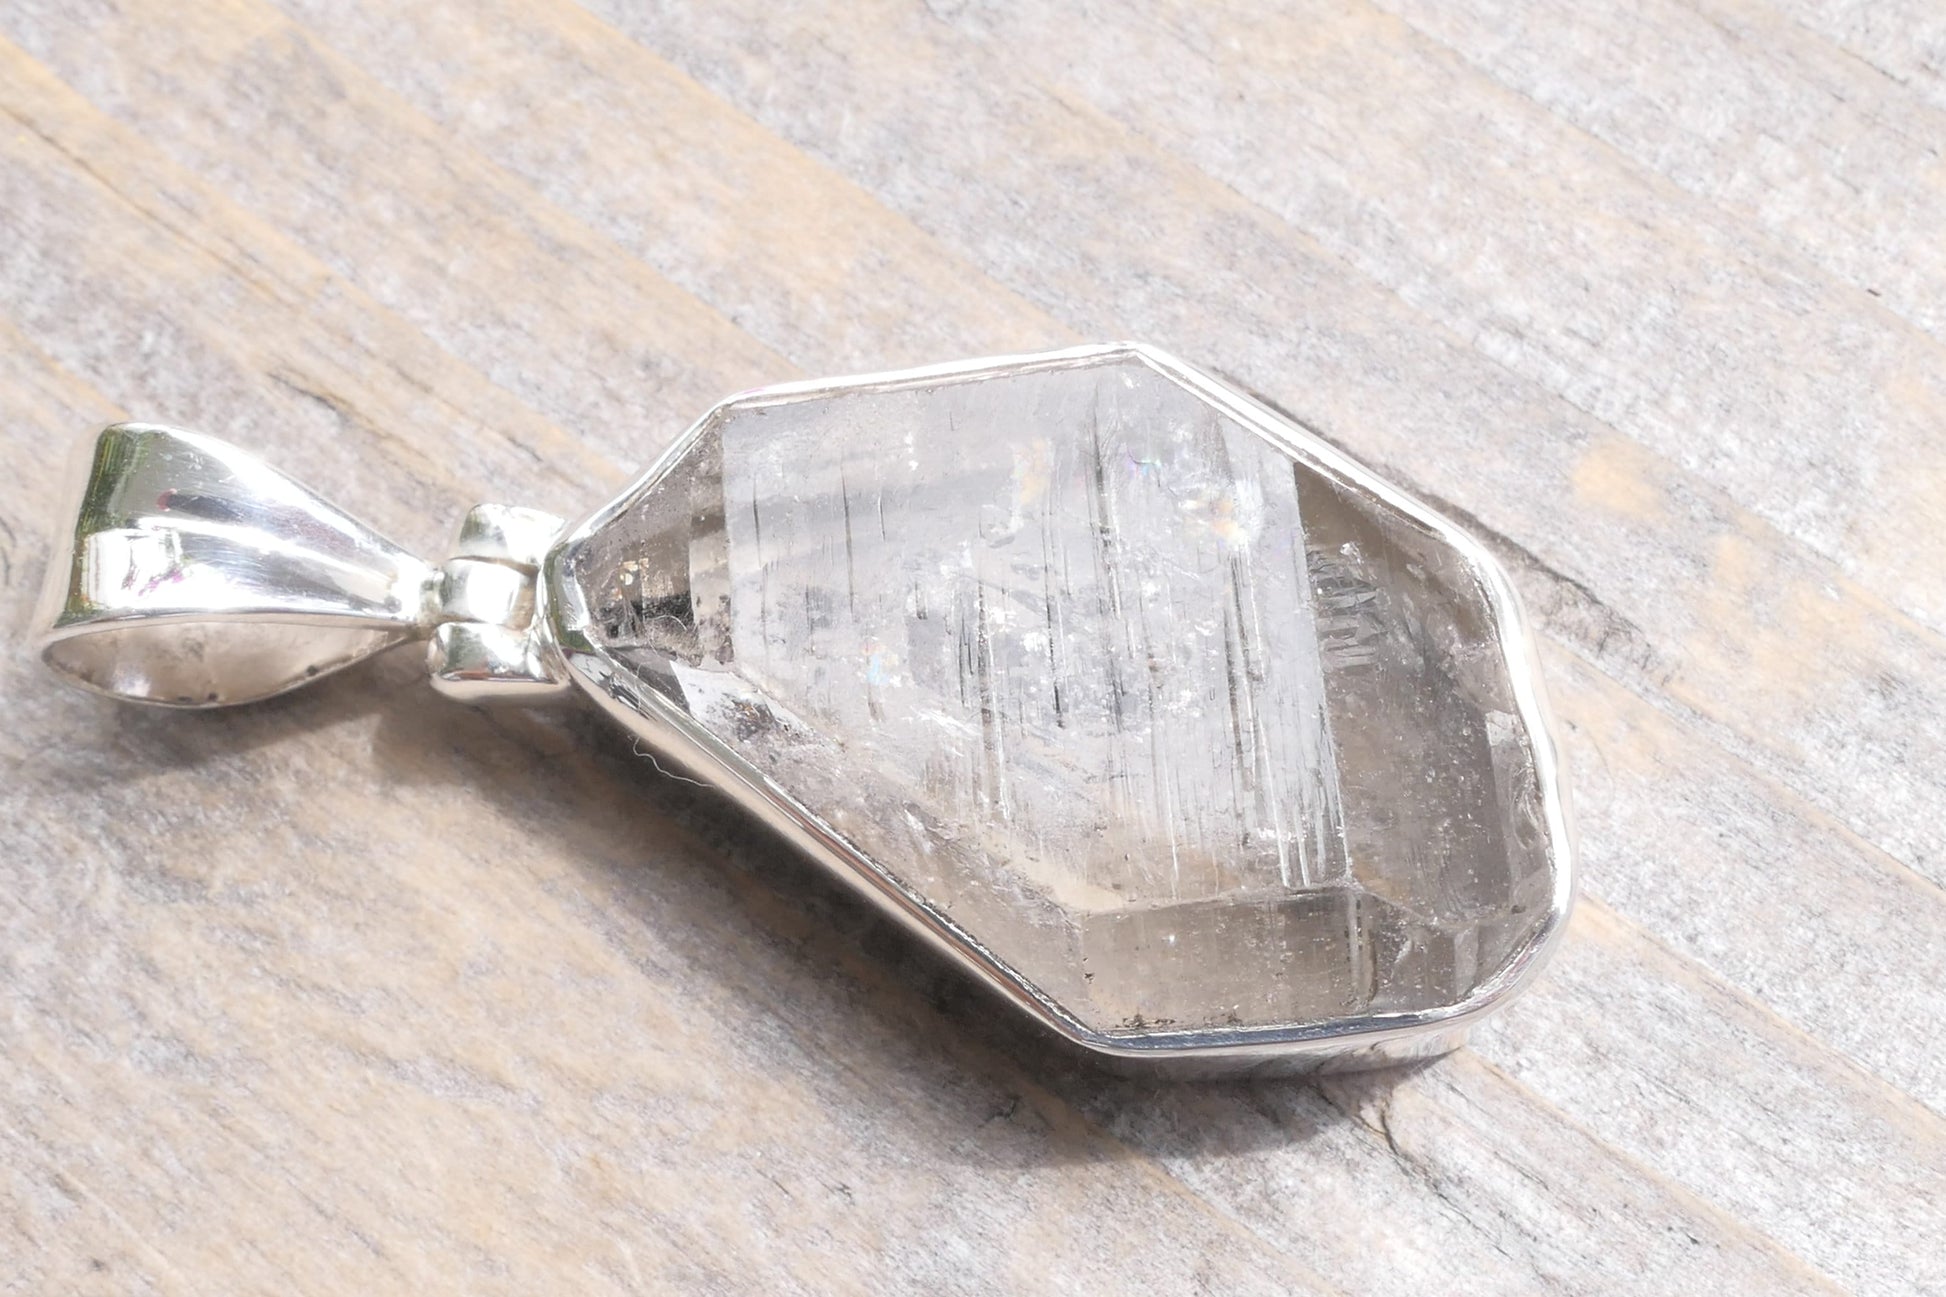 Herkimer Diamant / Bergkristall Anhänger Edelstein Collier Weihnachts geschenk für sie echt Bergkristall